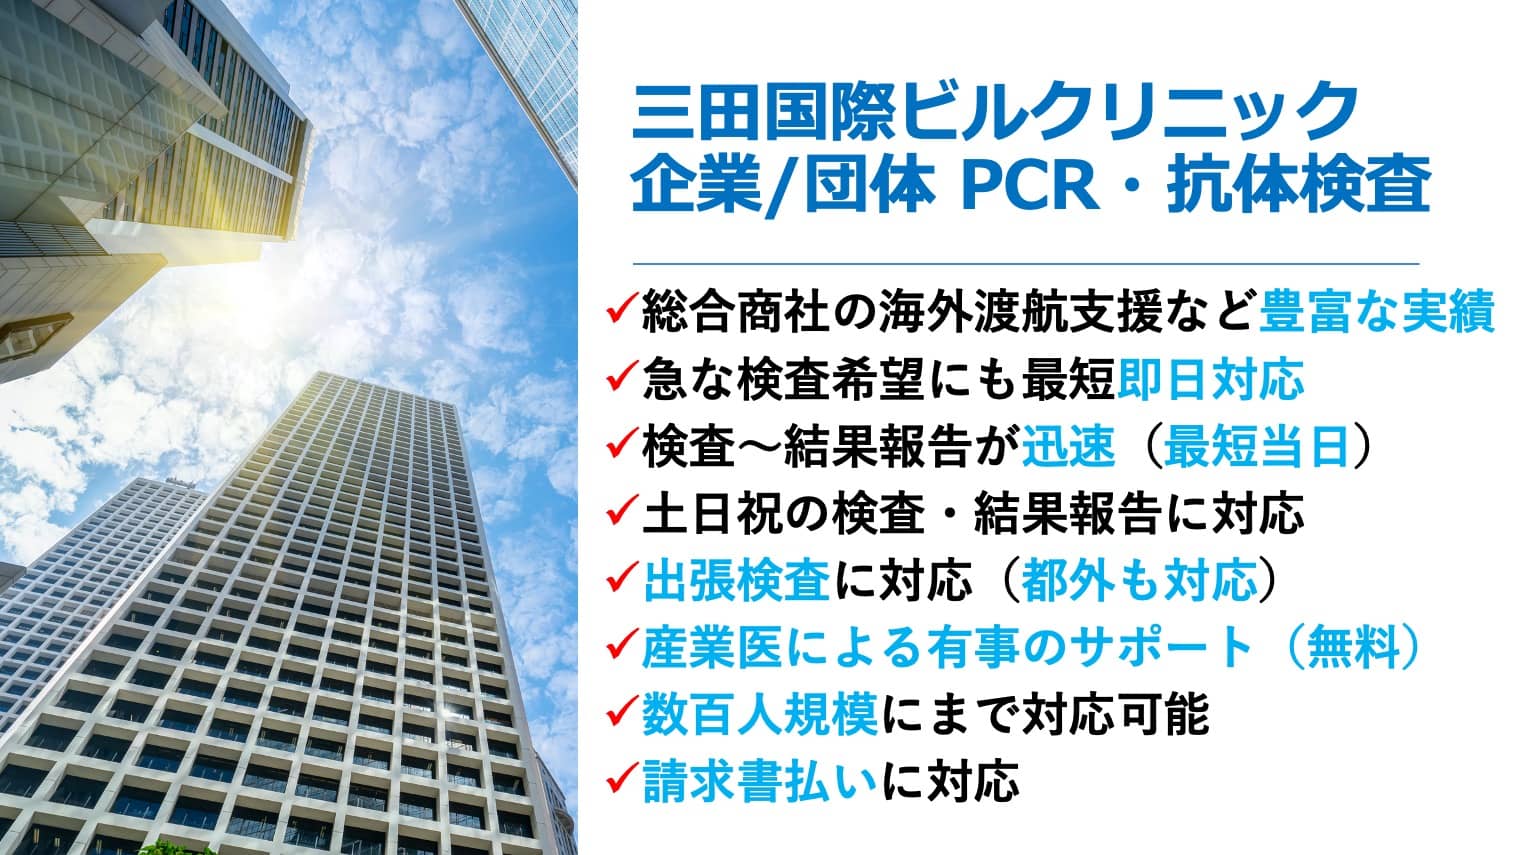 三田国際ビルクリニック企業・団体PCR抗体検査